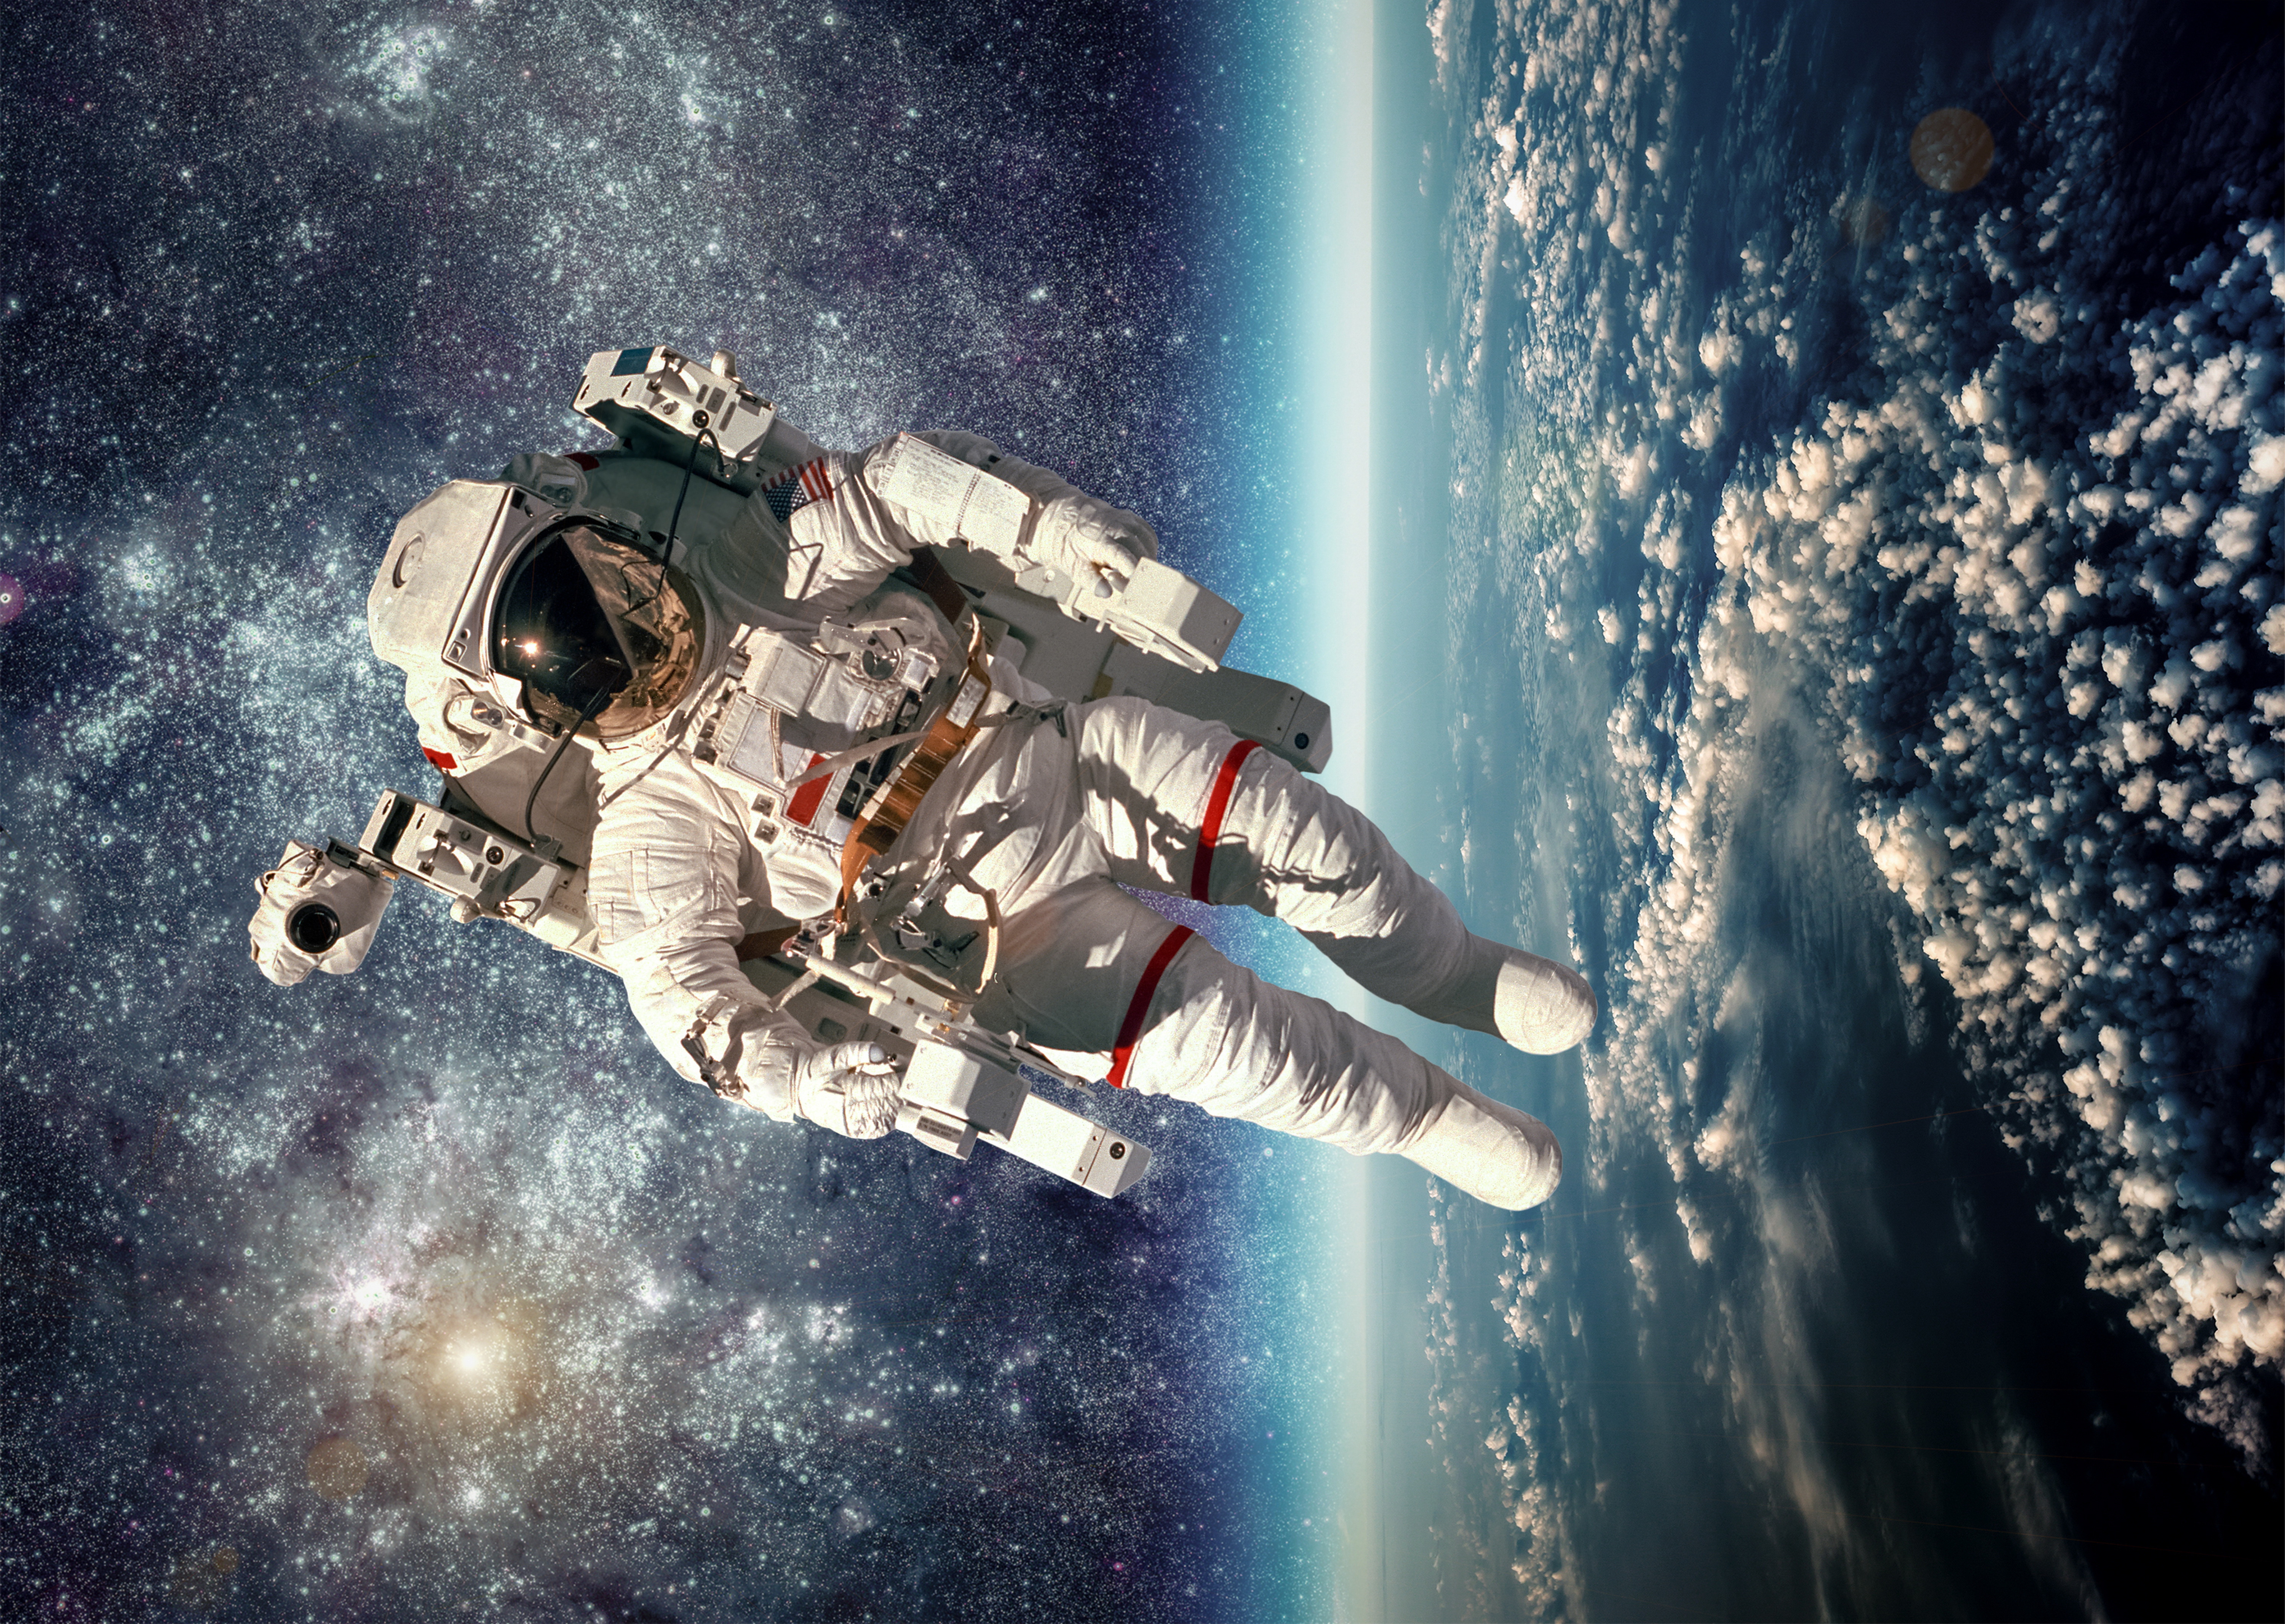 Скачать картинку Астронавт, Научная Фантастика в телефон бесплатно.